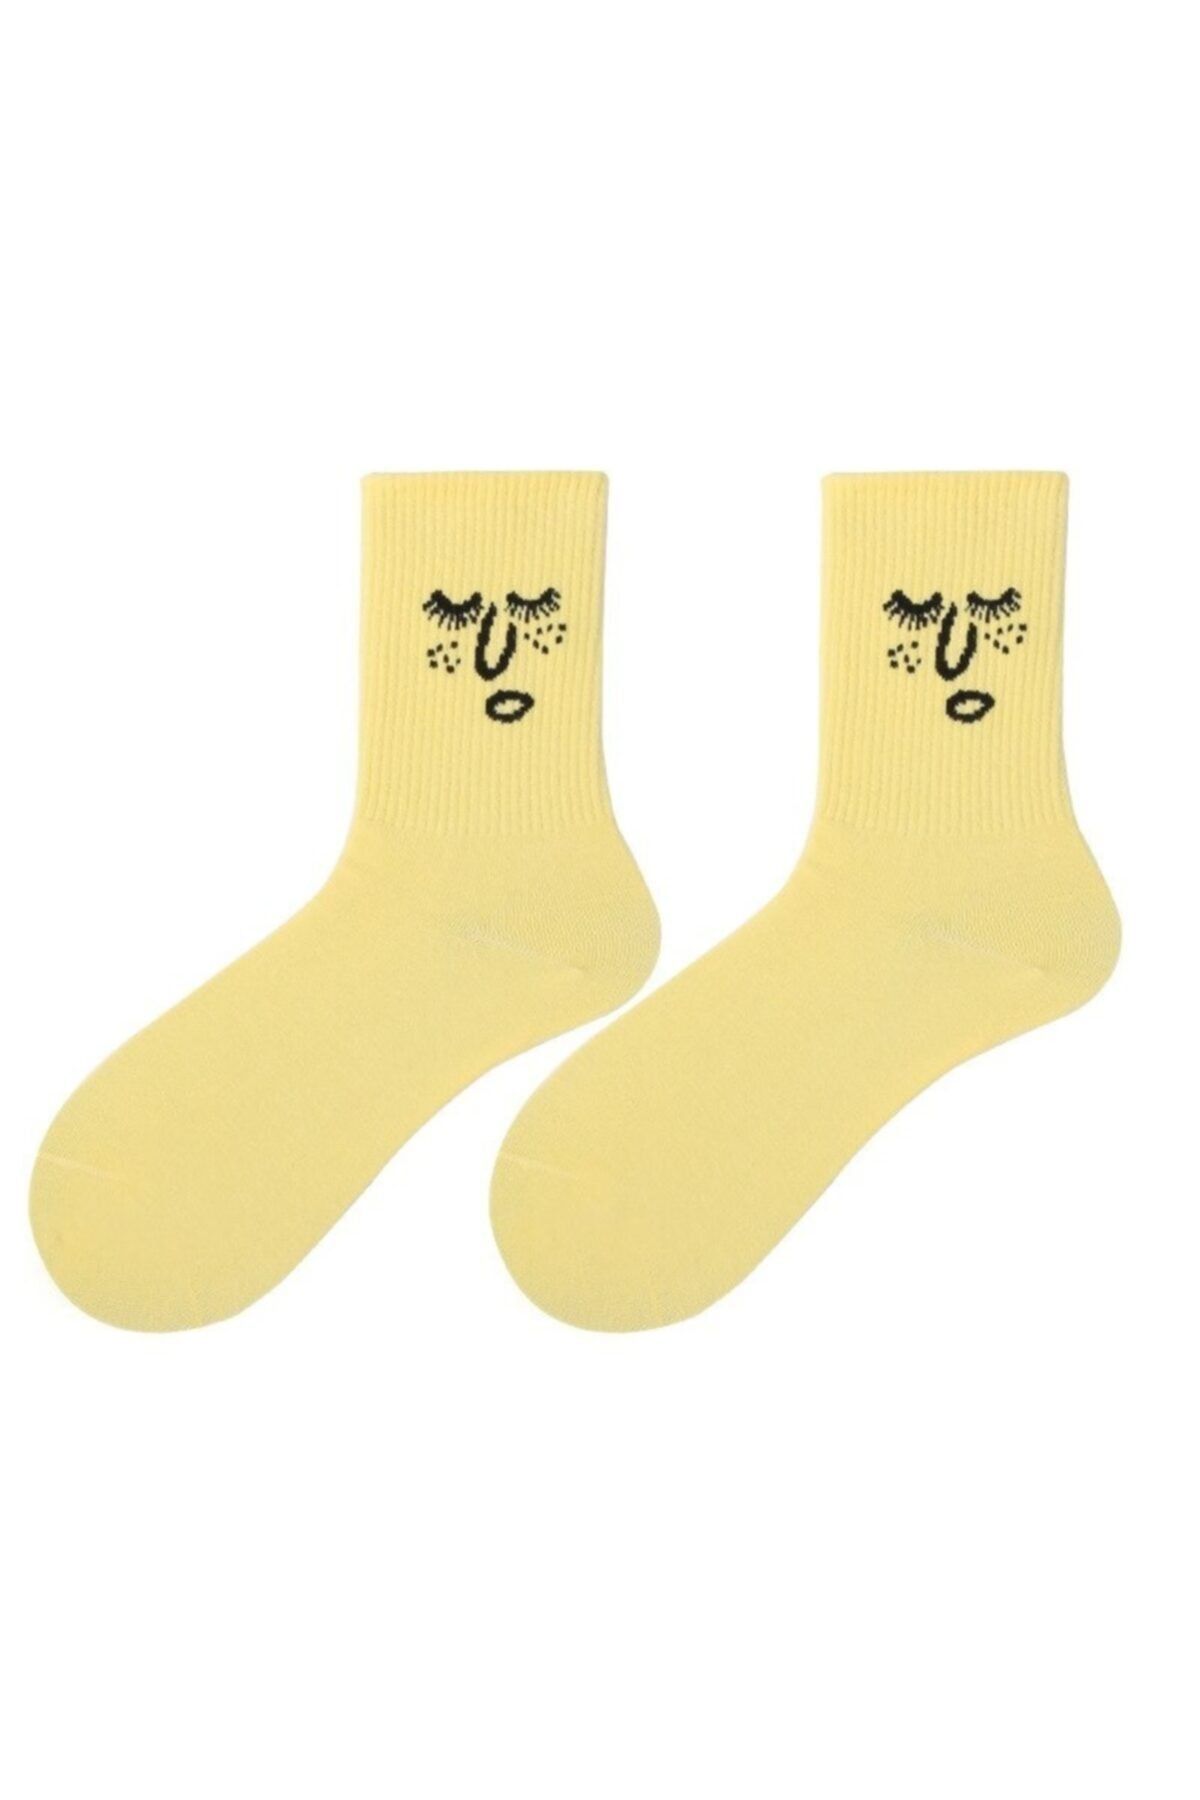 BGK Unisex Renkli Yüz Desenli Tenis Çorap